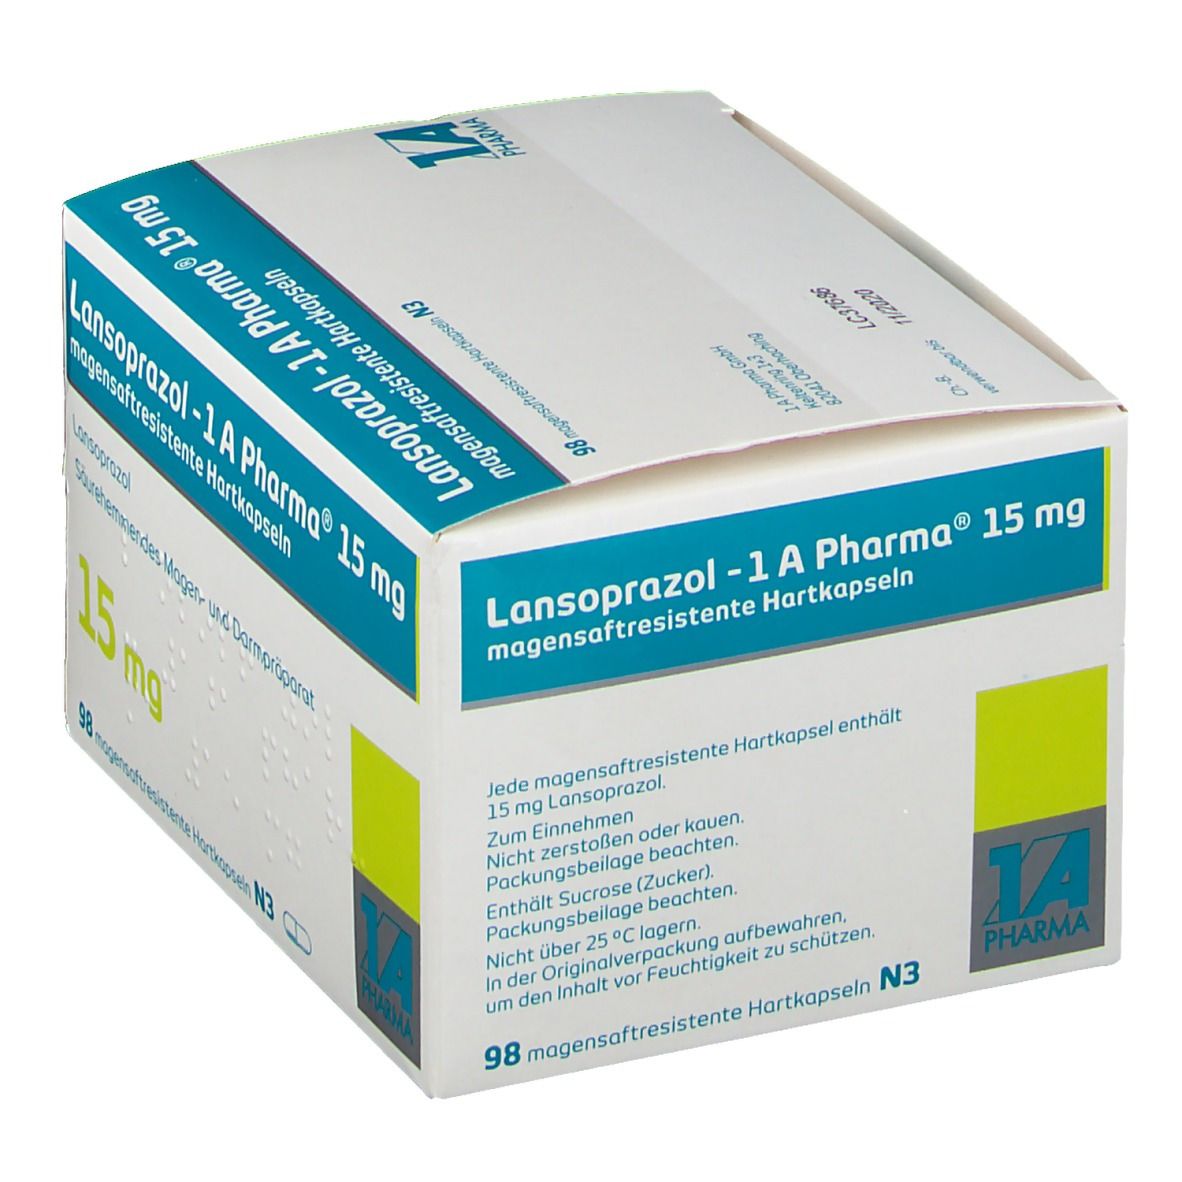 Lansoprazol 1A Pharma® 15Mg